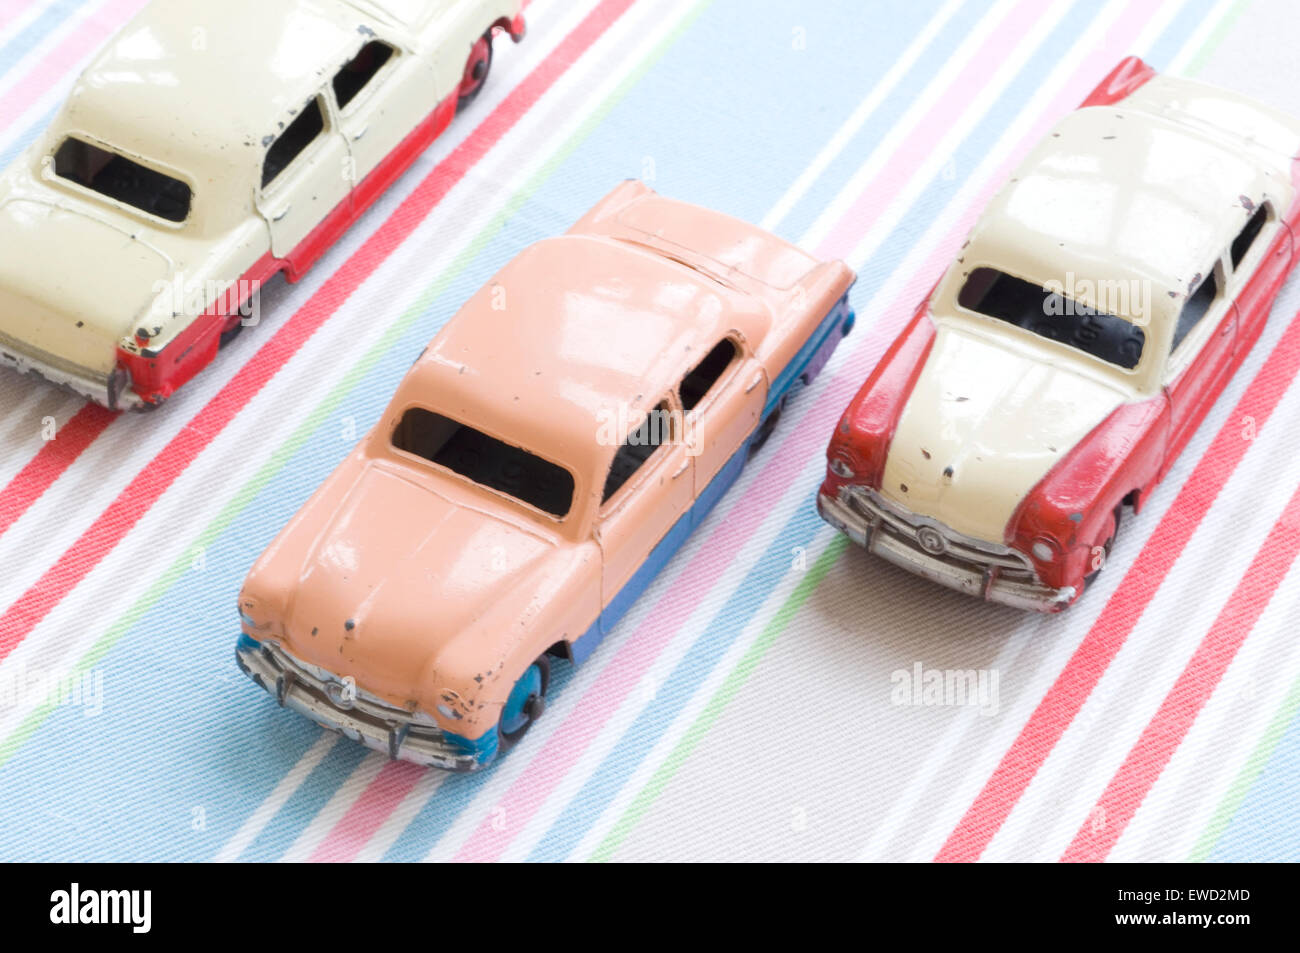 Dieselben drei schäbigen Autos, in verschiedenen Farben, fahren auf einer imaginären Autobahn Stockfoto